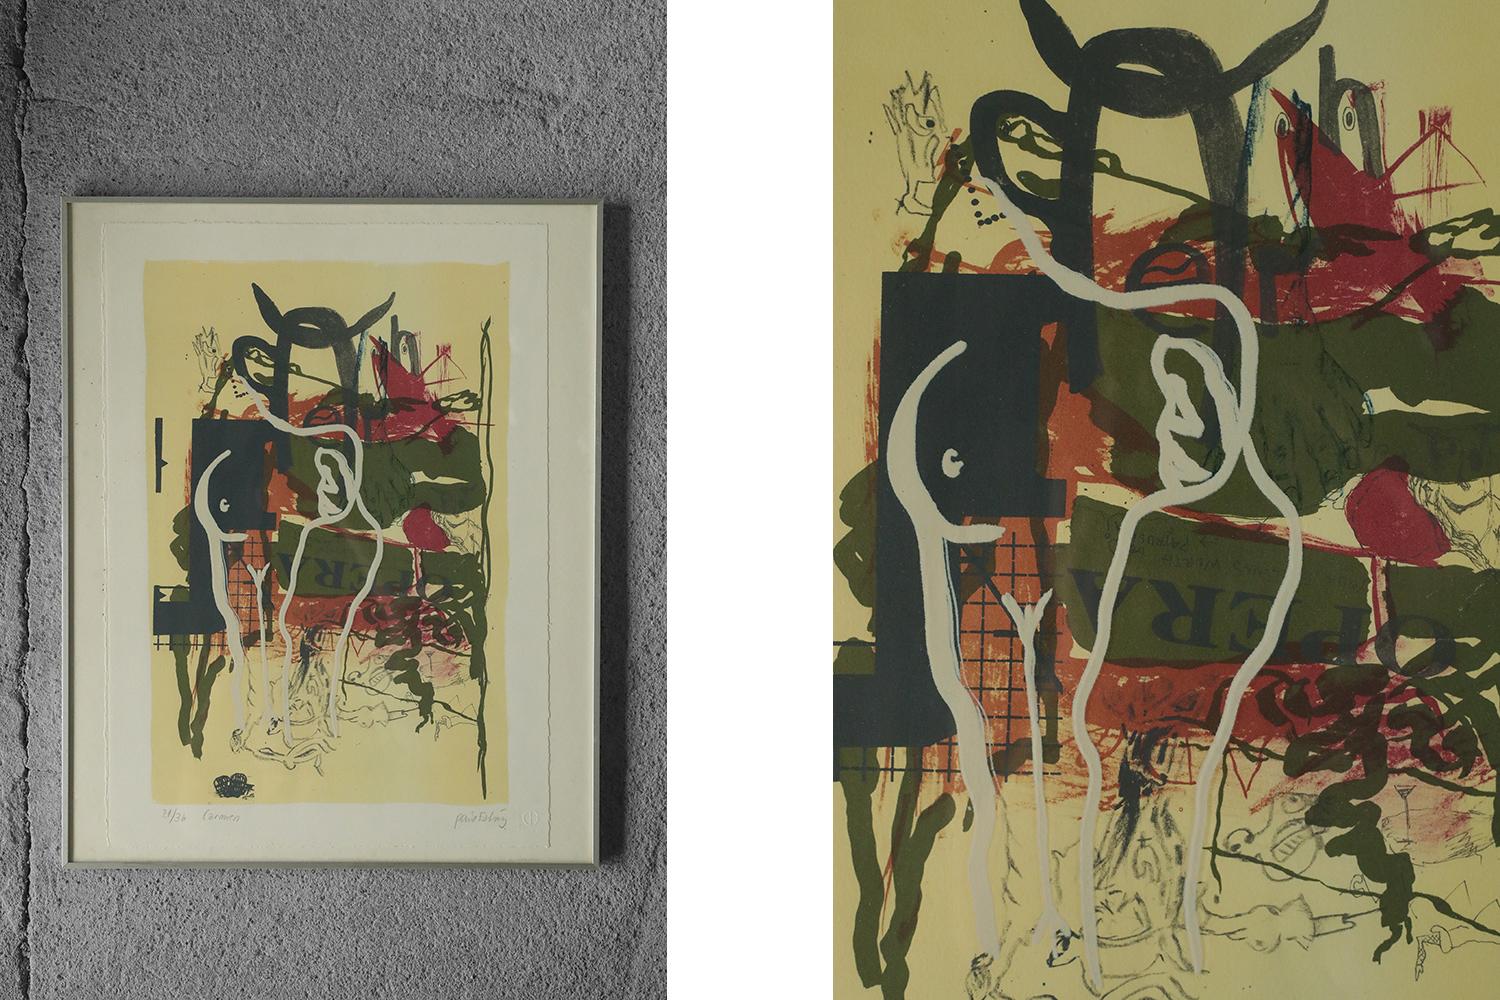 Paul Esting, Carmen
Farblithografie
Nummer 21/36
Arbeit mit Unterschrift und individueller Nummer und Titel (Bleistift)
Arbeitsmaße 50/40
Gerahmte Arbeit

Poul Esting ist ein dänischer Künstler, der 1943 geboren wurde. Seine Werke sind